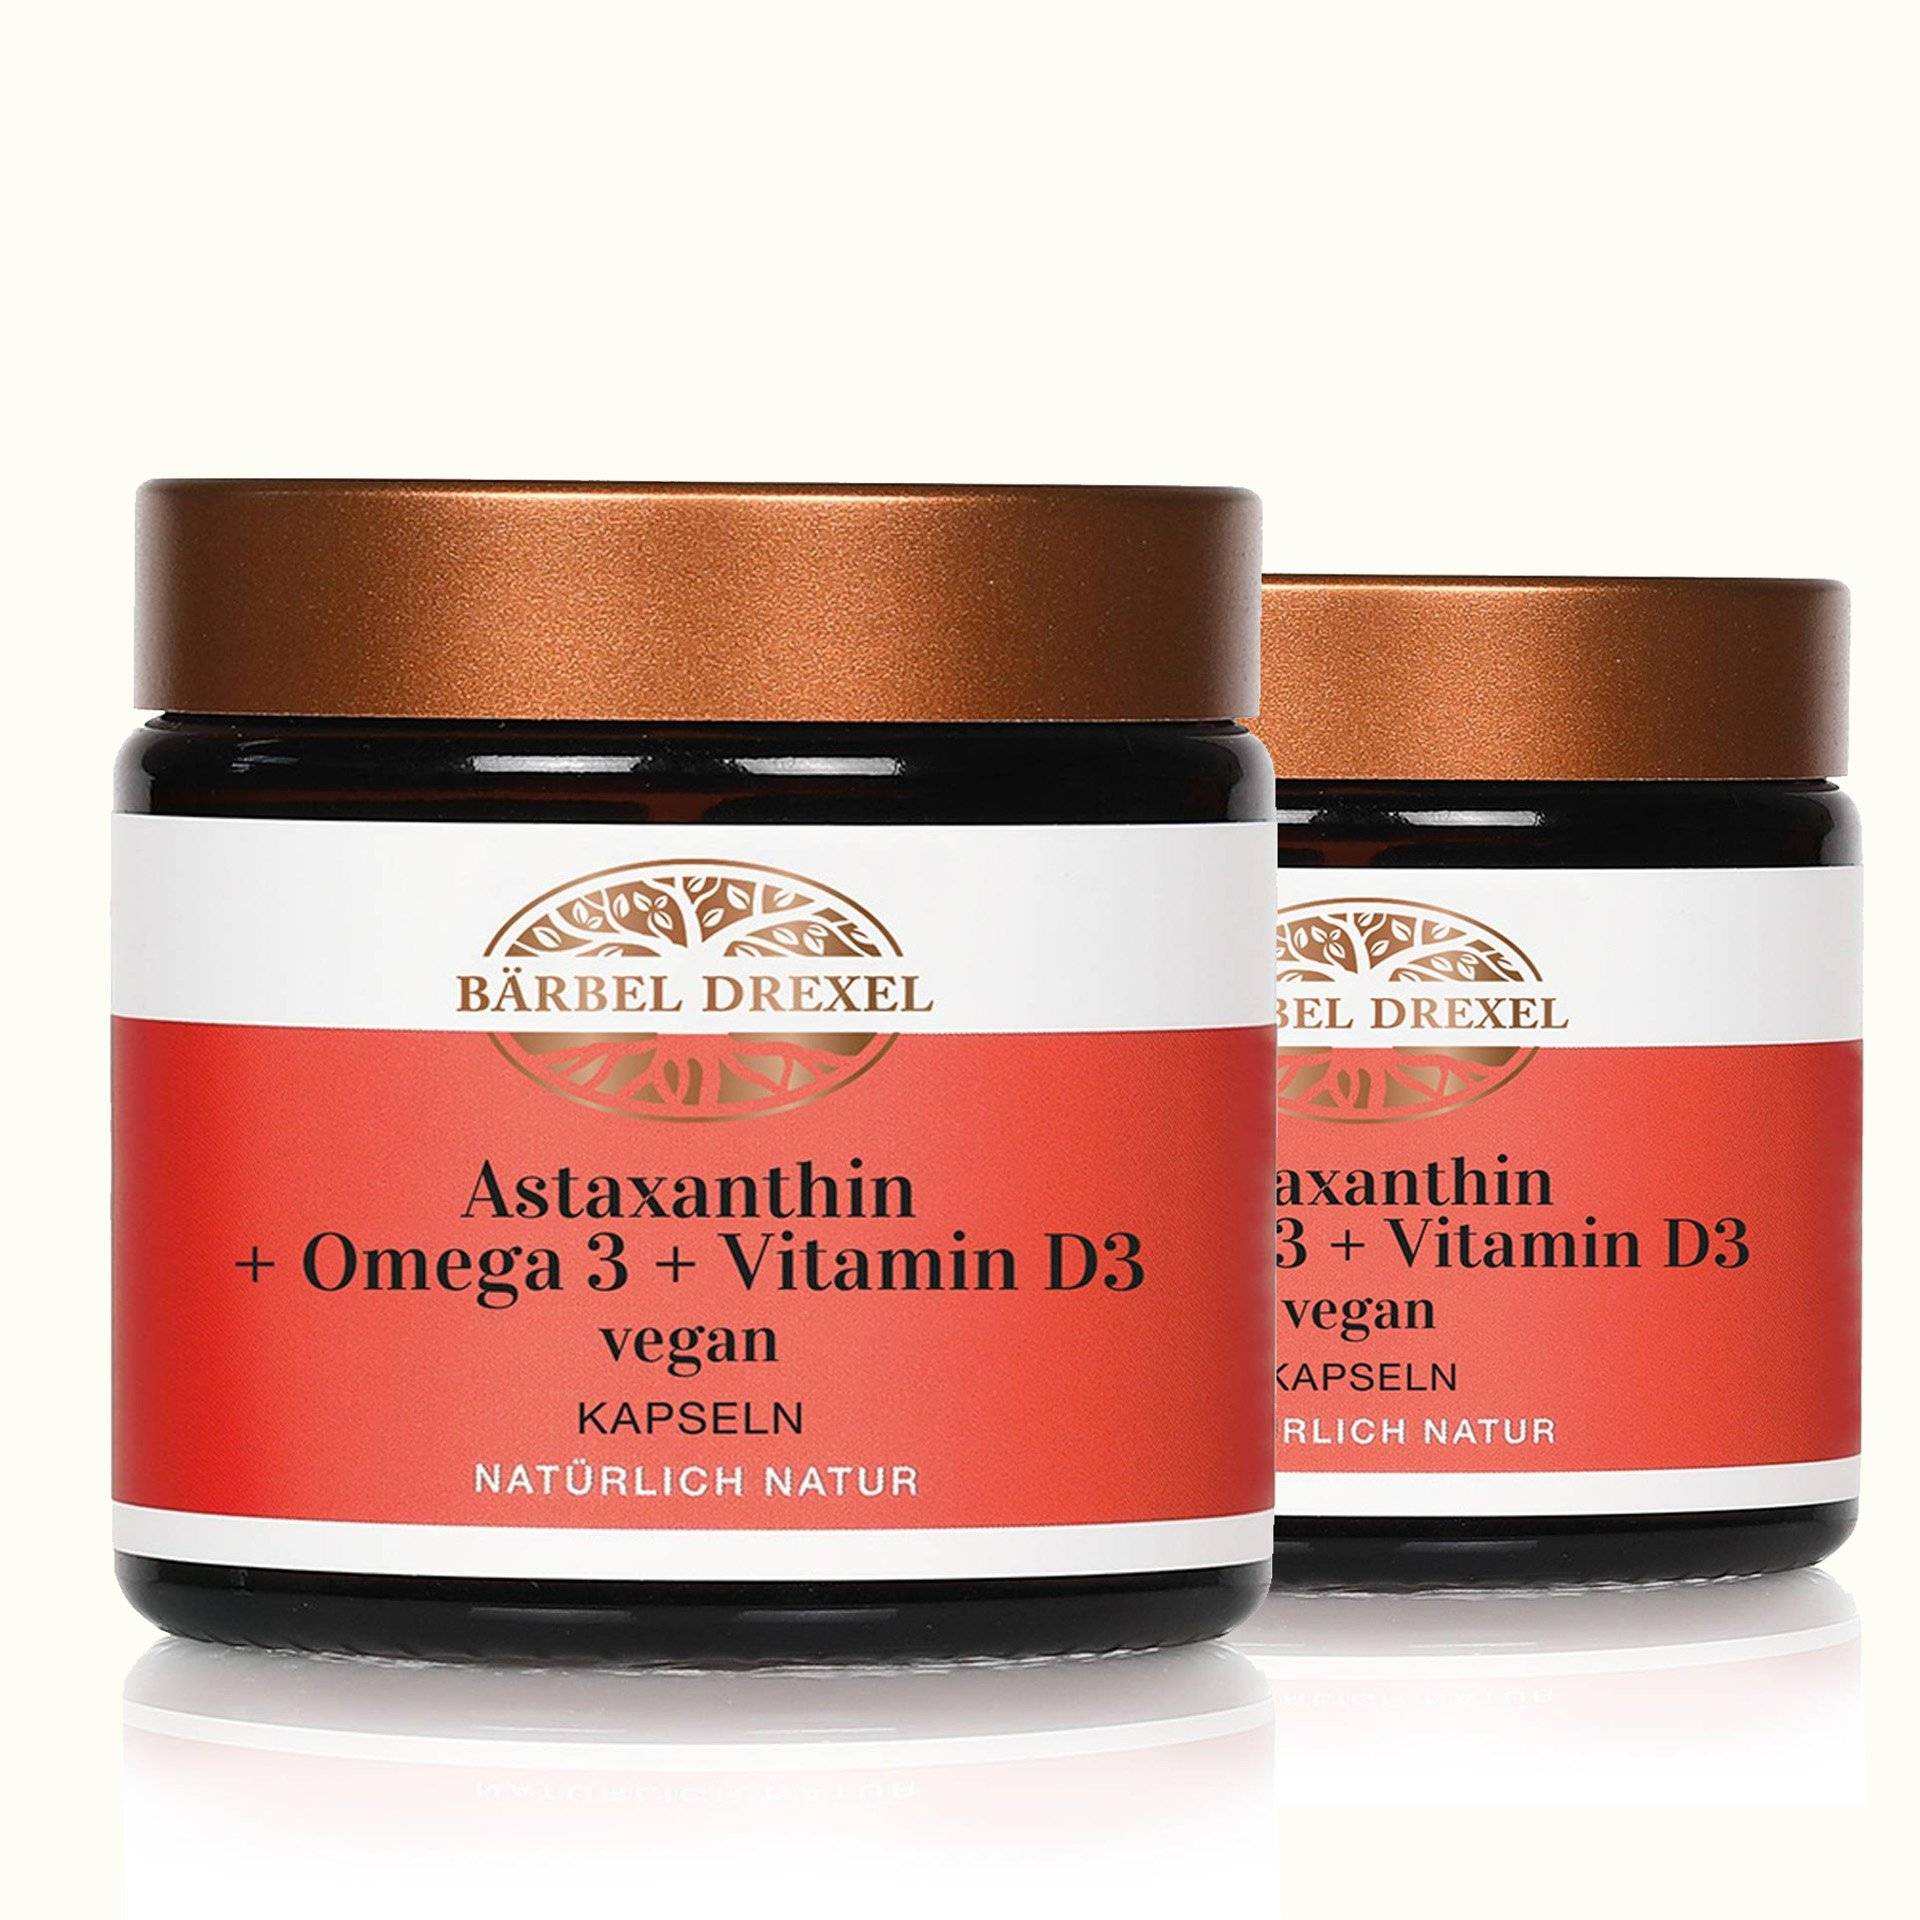 Duo Astaxanthin + Omega 3 + Vitamin D3 vegan Kapseln